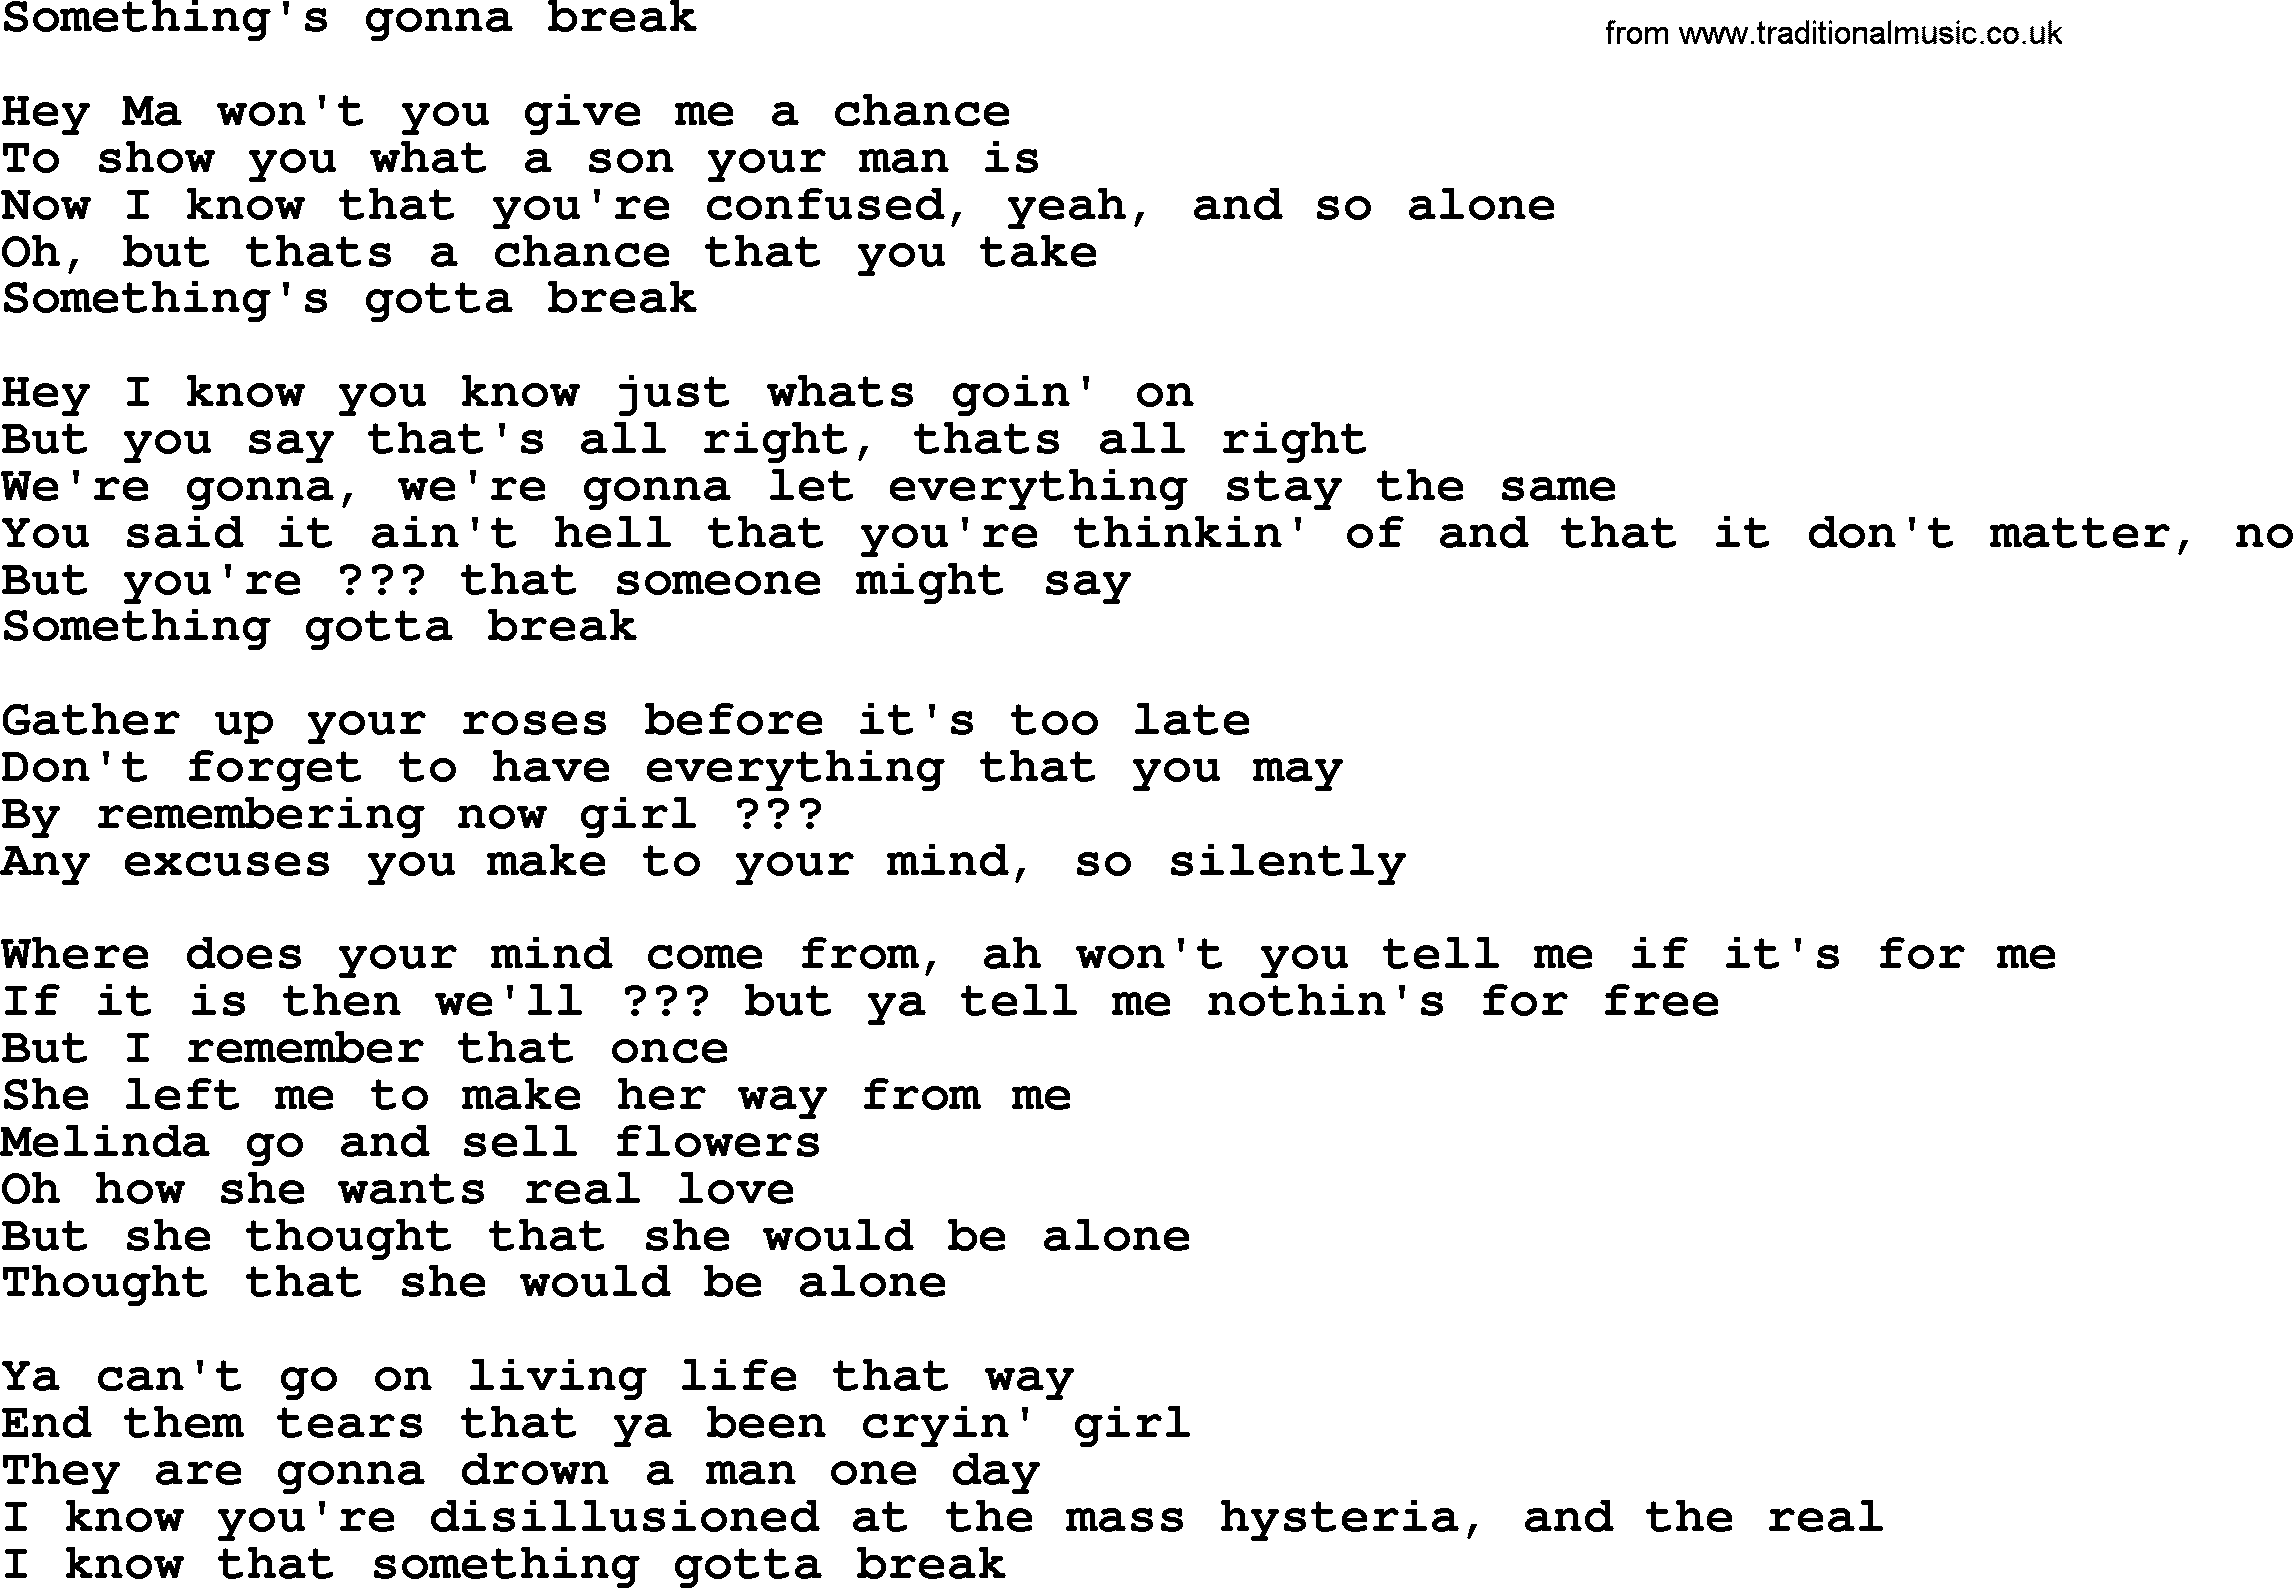 Bruce Springsteen song: Something's Gonna Break lyrics